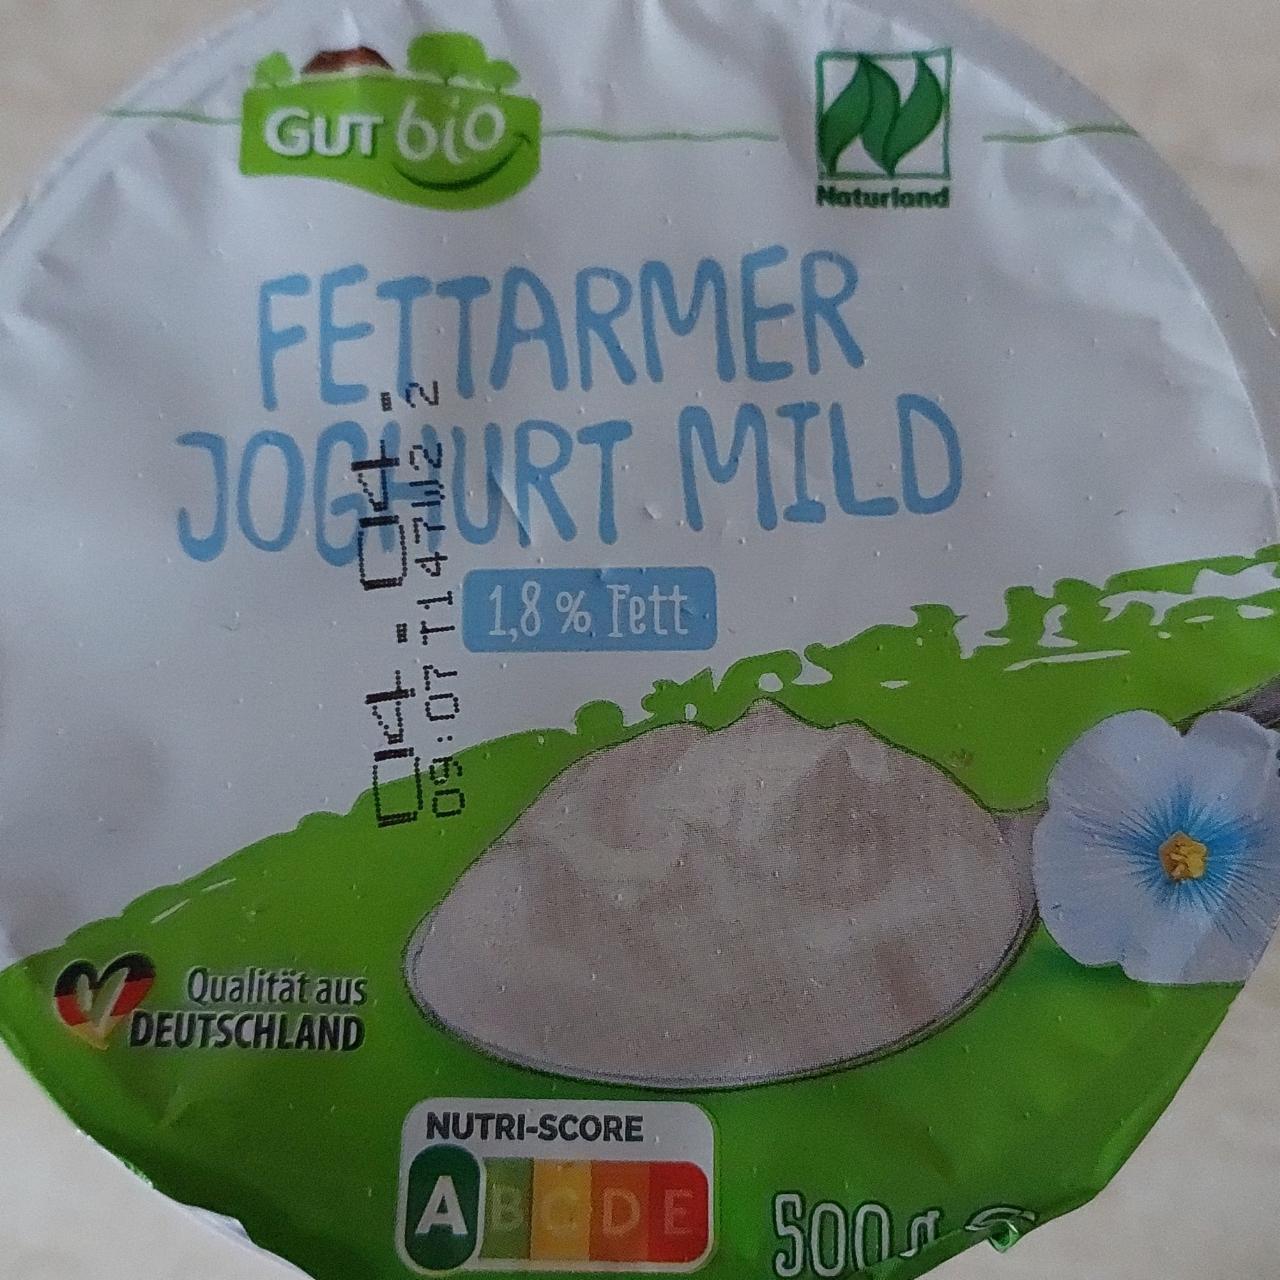 Fotografie - Fettarmer Joghurt mild 1,8% Fett GutBio